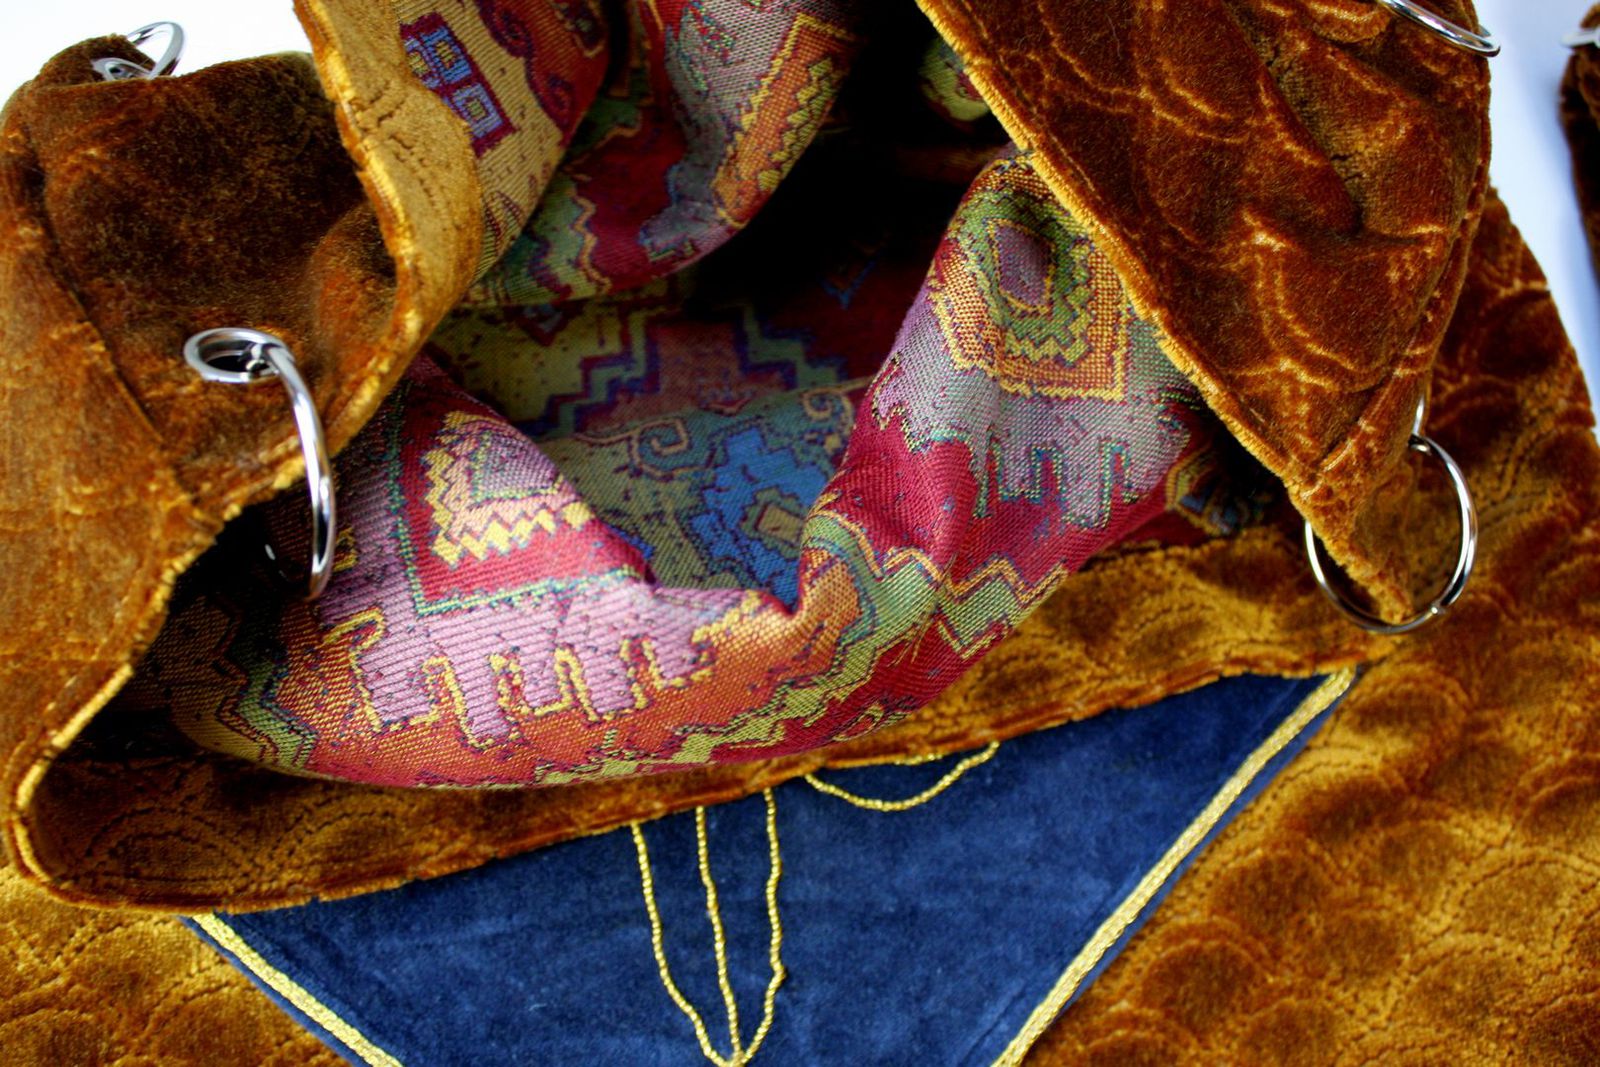 Wnętrze torby worka z materiałów obiciowych: złotego strukturalnego weluru i kolorowego żakardu.